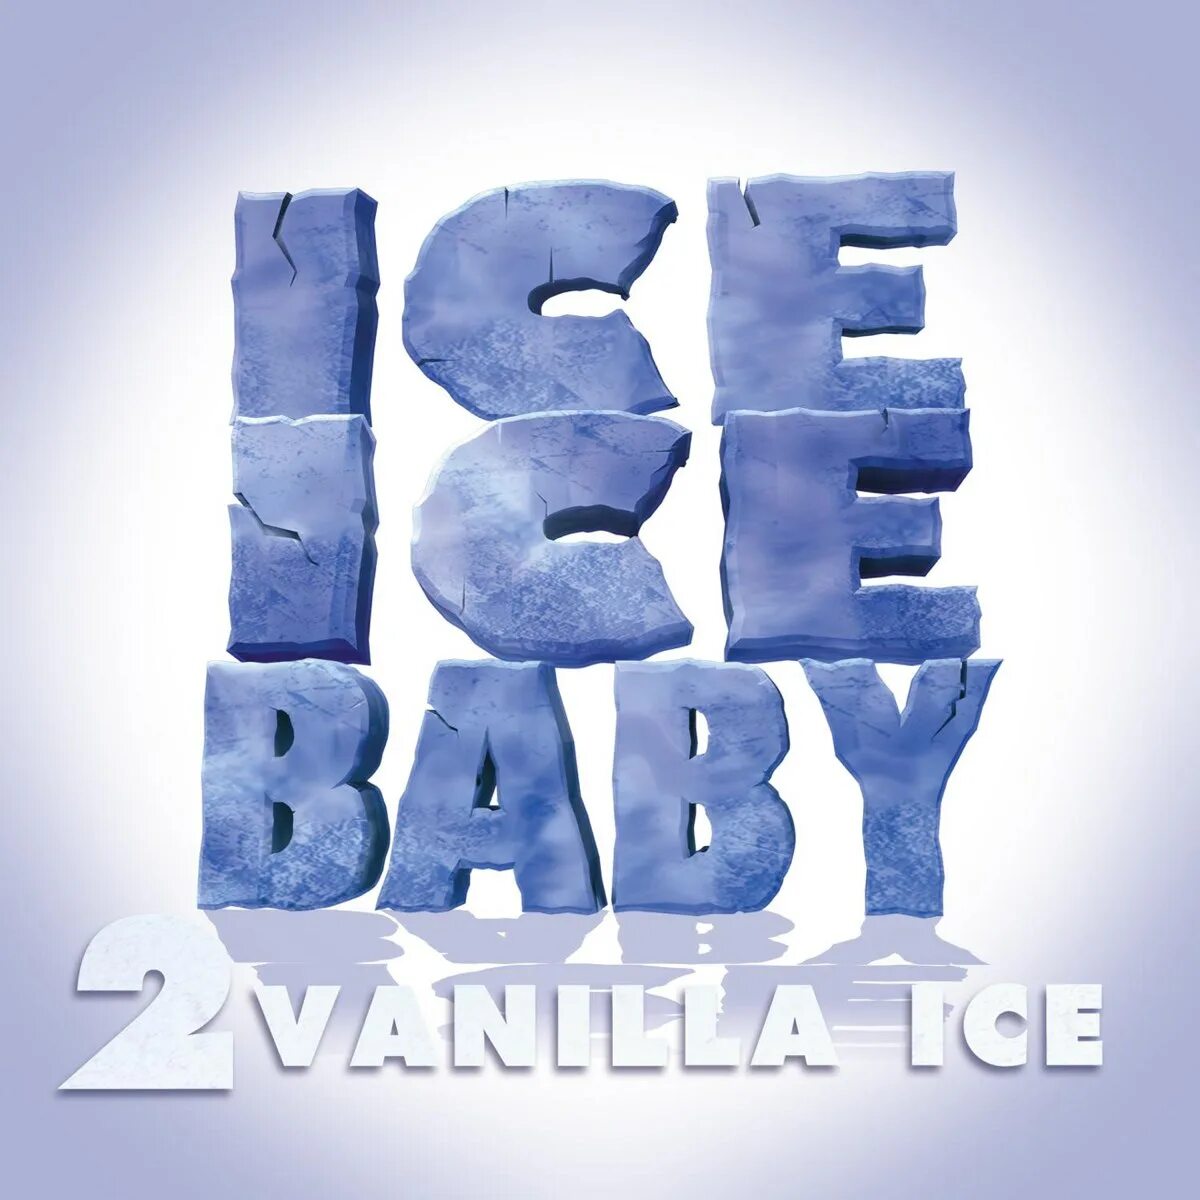 Ice Ice Baby. Vanilla Ice Ice Ice Baby. Ice Ice Baby Vanilla Ice обложка. Vanilla Ice альбомы. Айс айс бэйби